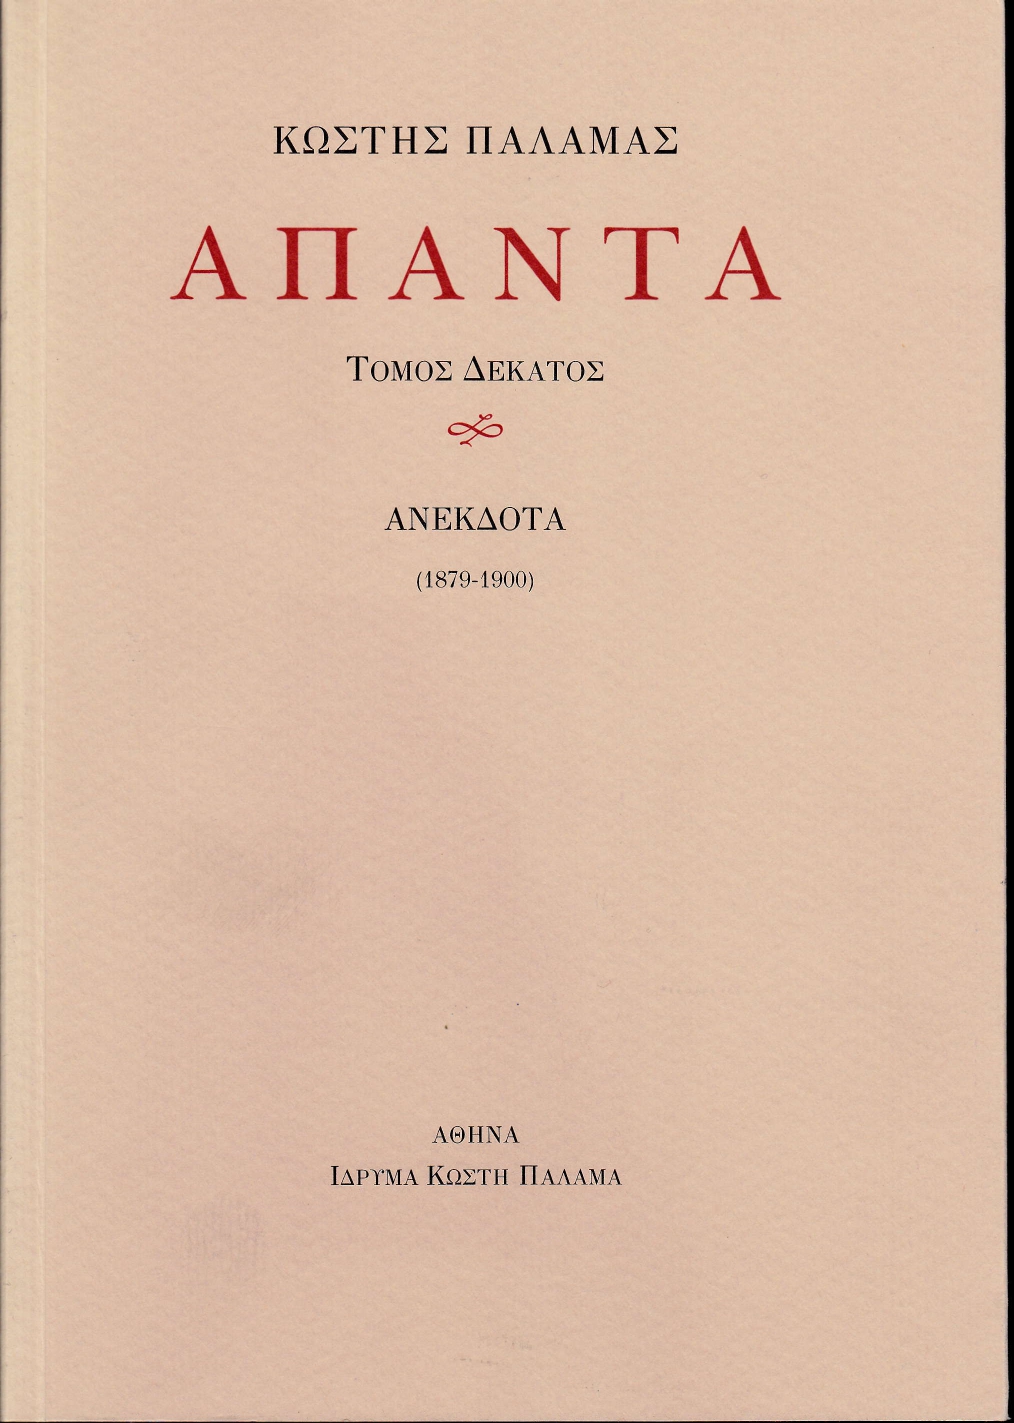 Άπαντα X, Ανέκδοτα (1879-1900), Παλαμάς, Κωστής, 1859-1943, Ίδρυμα Κωστή Παλαμά, 2019